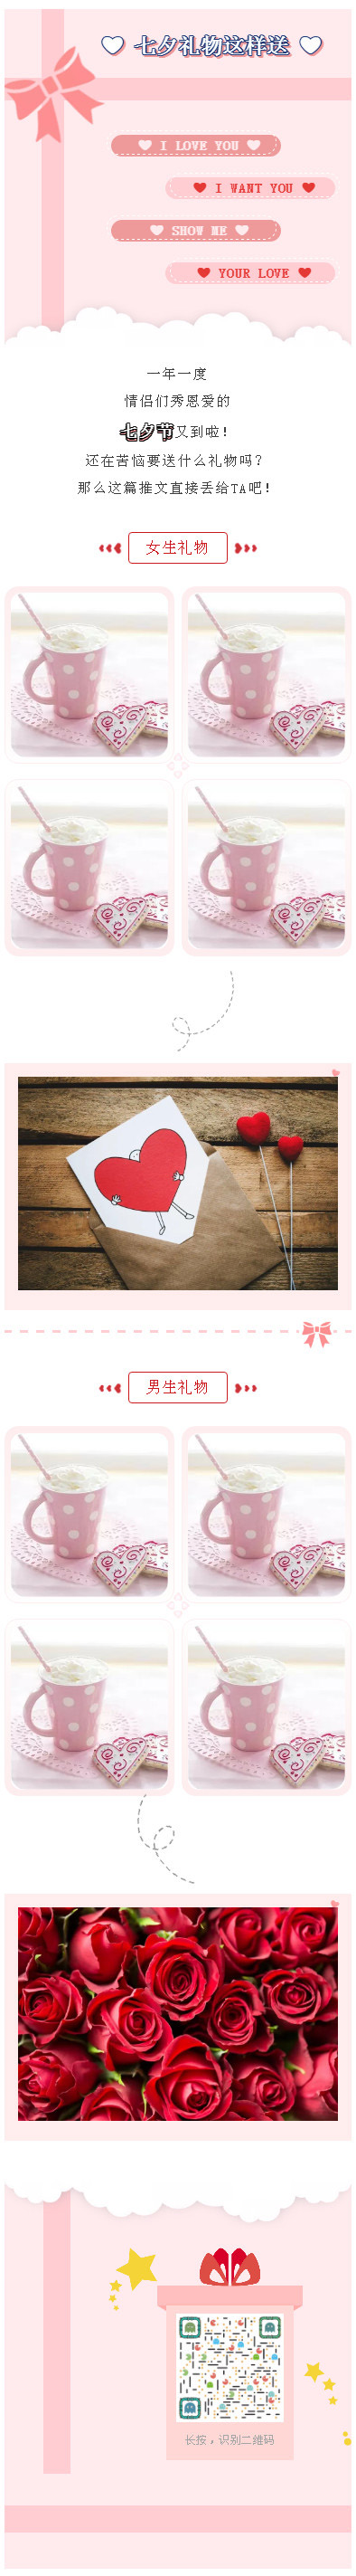 微信七夕情人节模板情人节礼物粉红色风格微信公众号推文素材模板